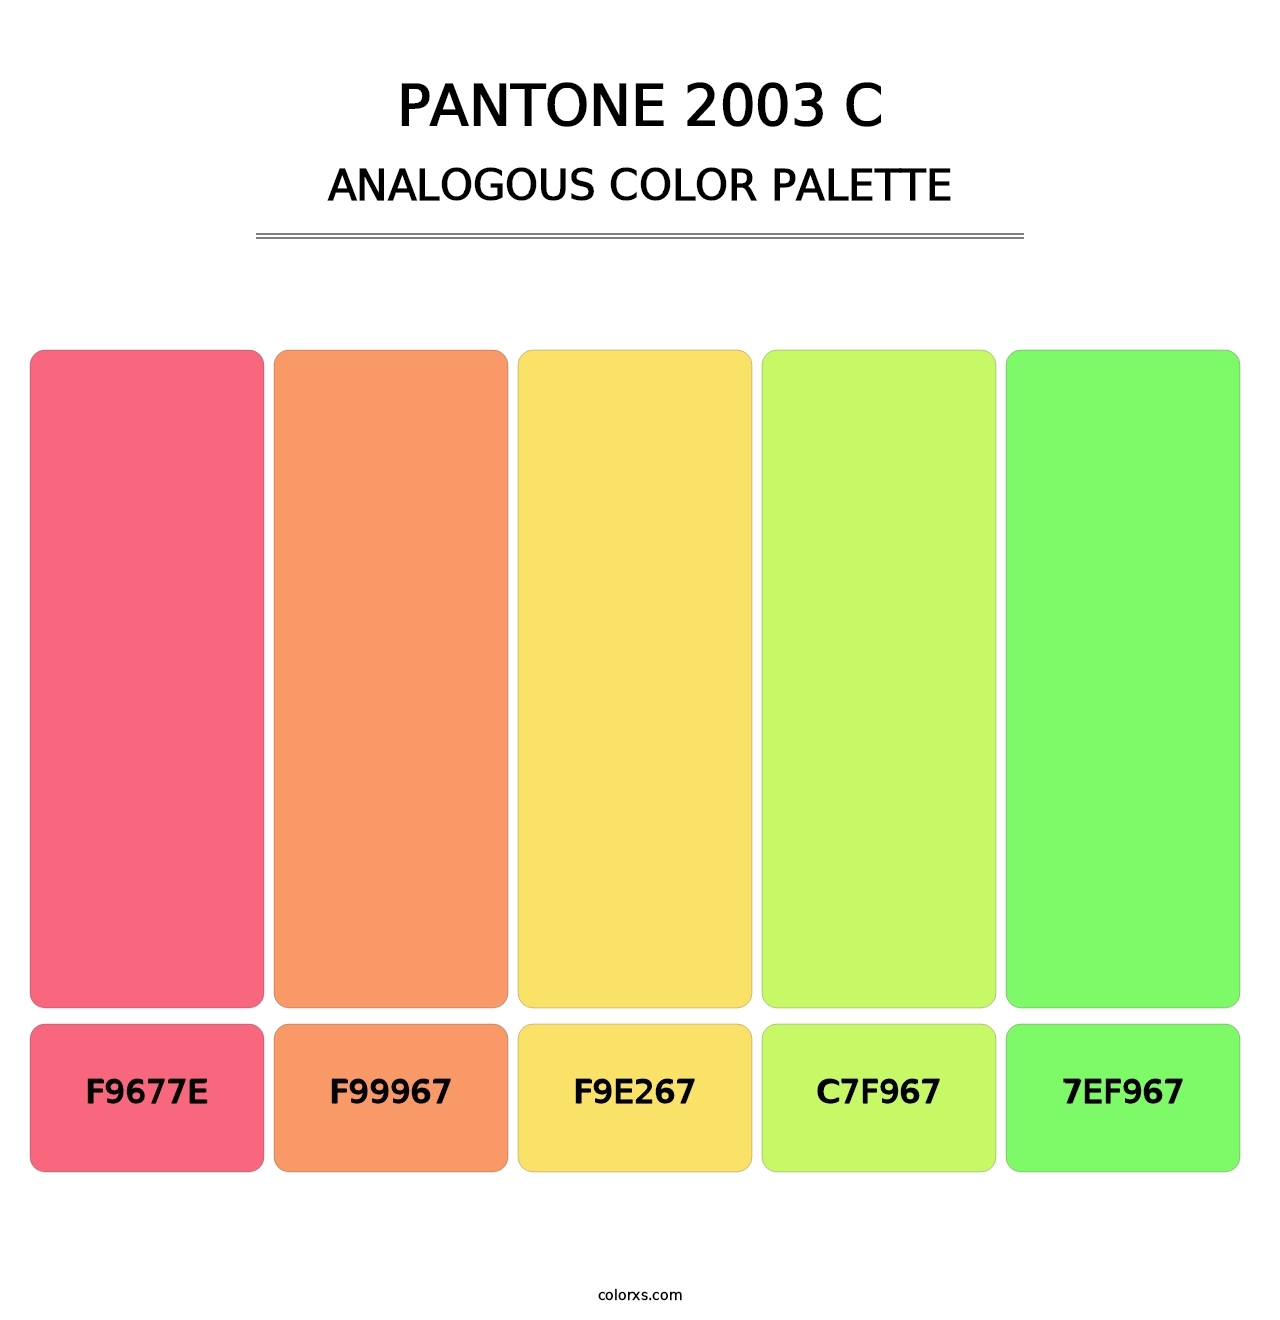 PANTONE 2003 C - Analogous Color Palette